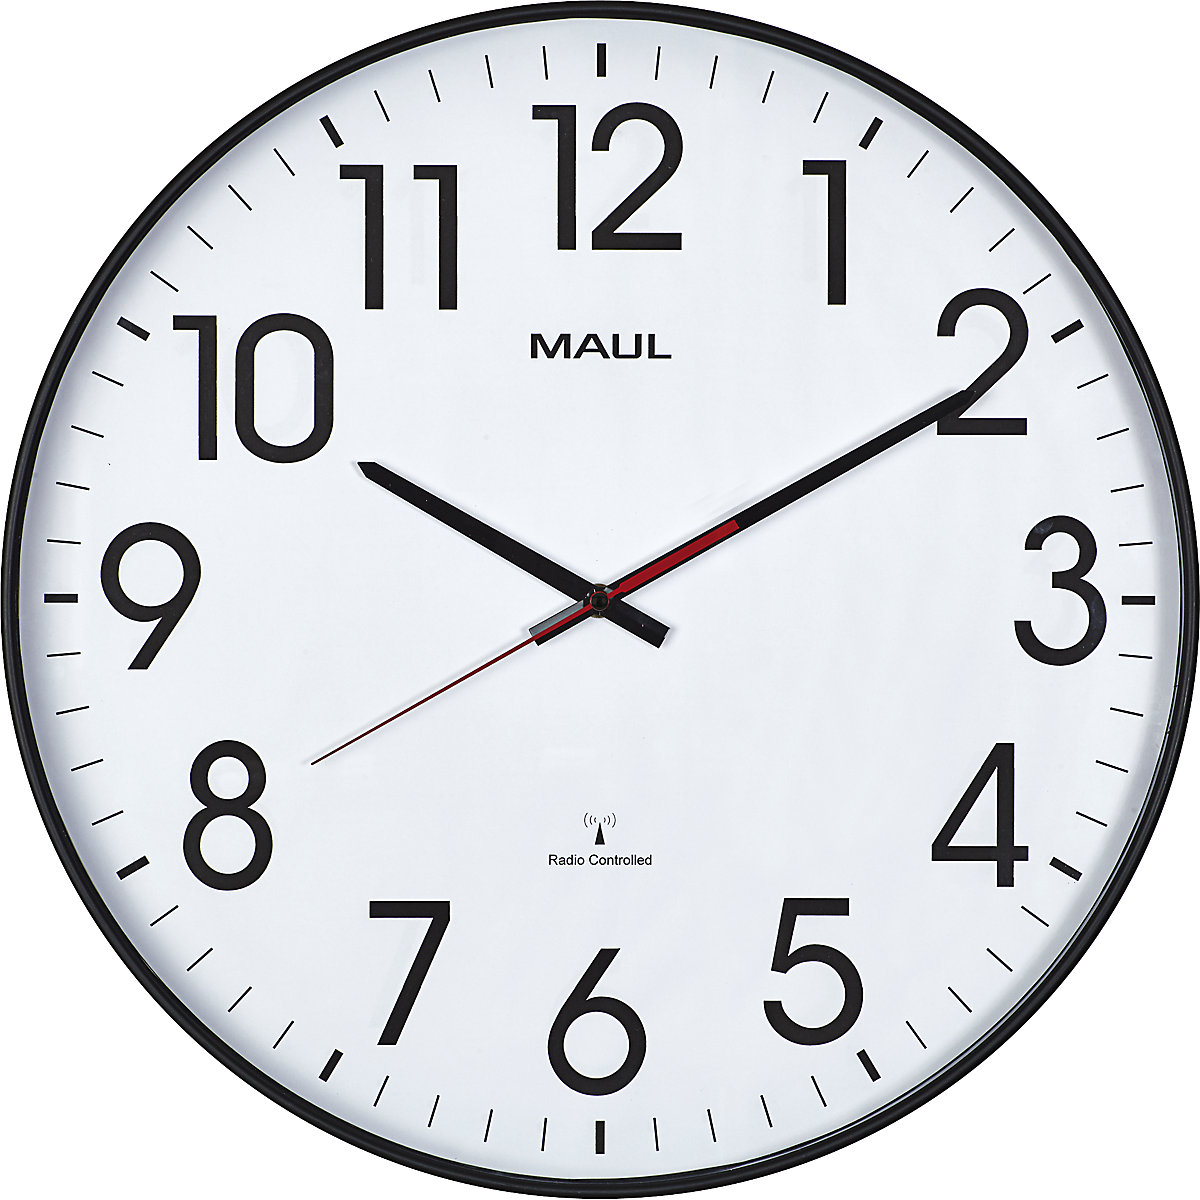 MAULclimb wall clock, Ø 470 mm - MAUL